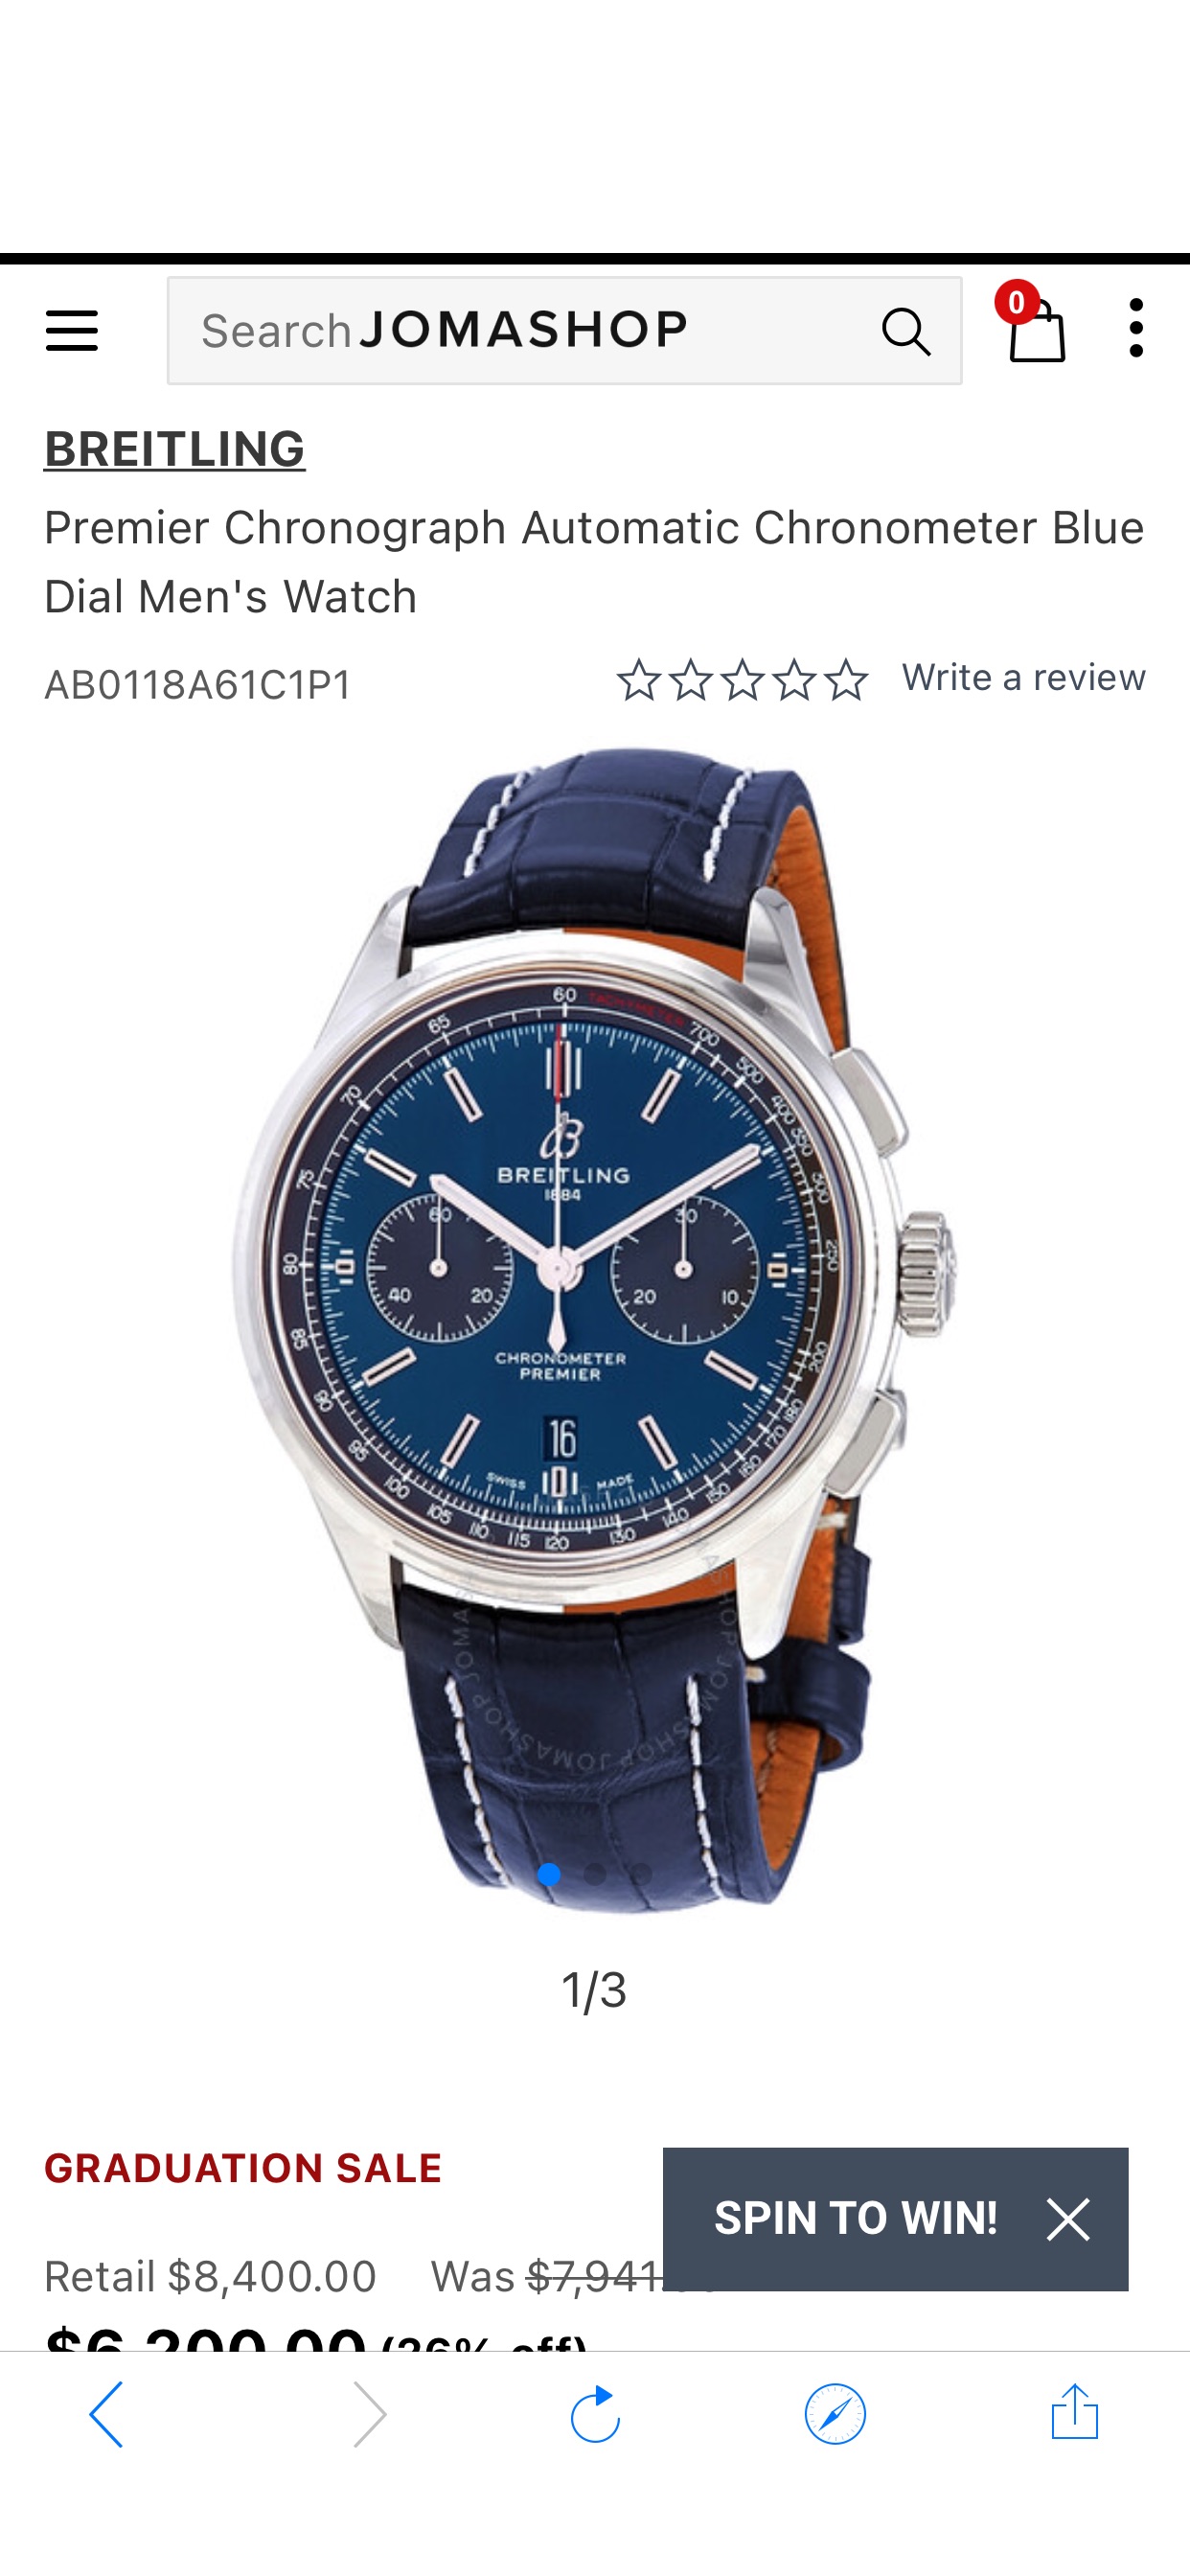 Breitling Premier Chronograph Automatic Chronometer Blue Dial Men's Watch AB0118A61C1P1 842047176542 - Watches, Premier - Jomashop
手表